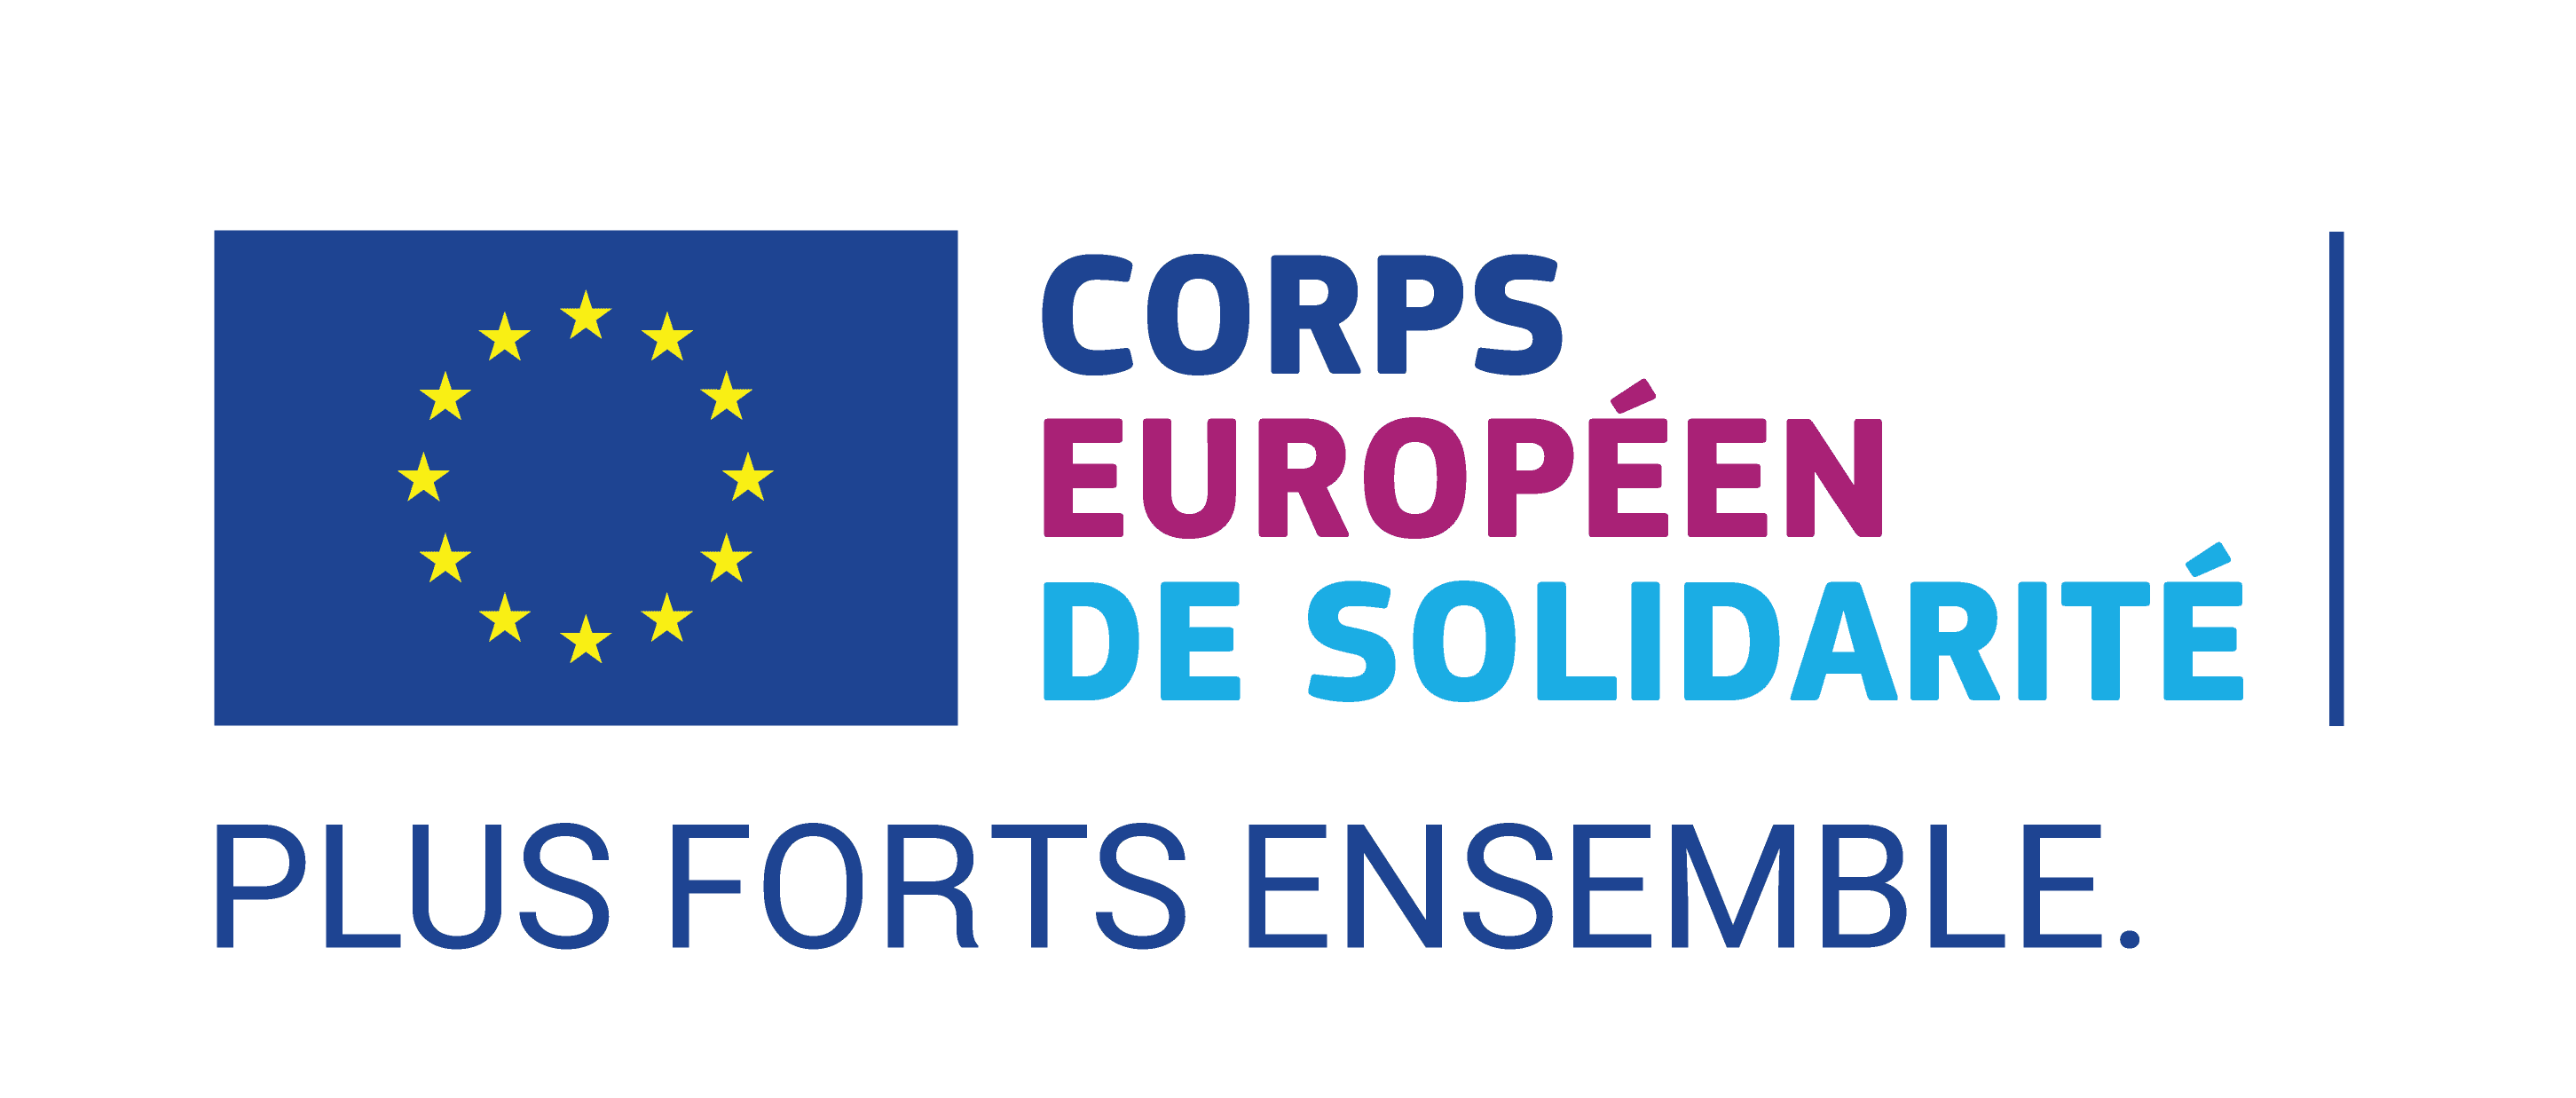 Corps Européen de solidarité